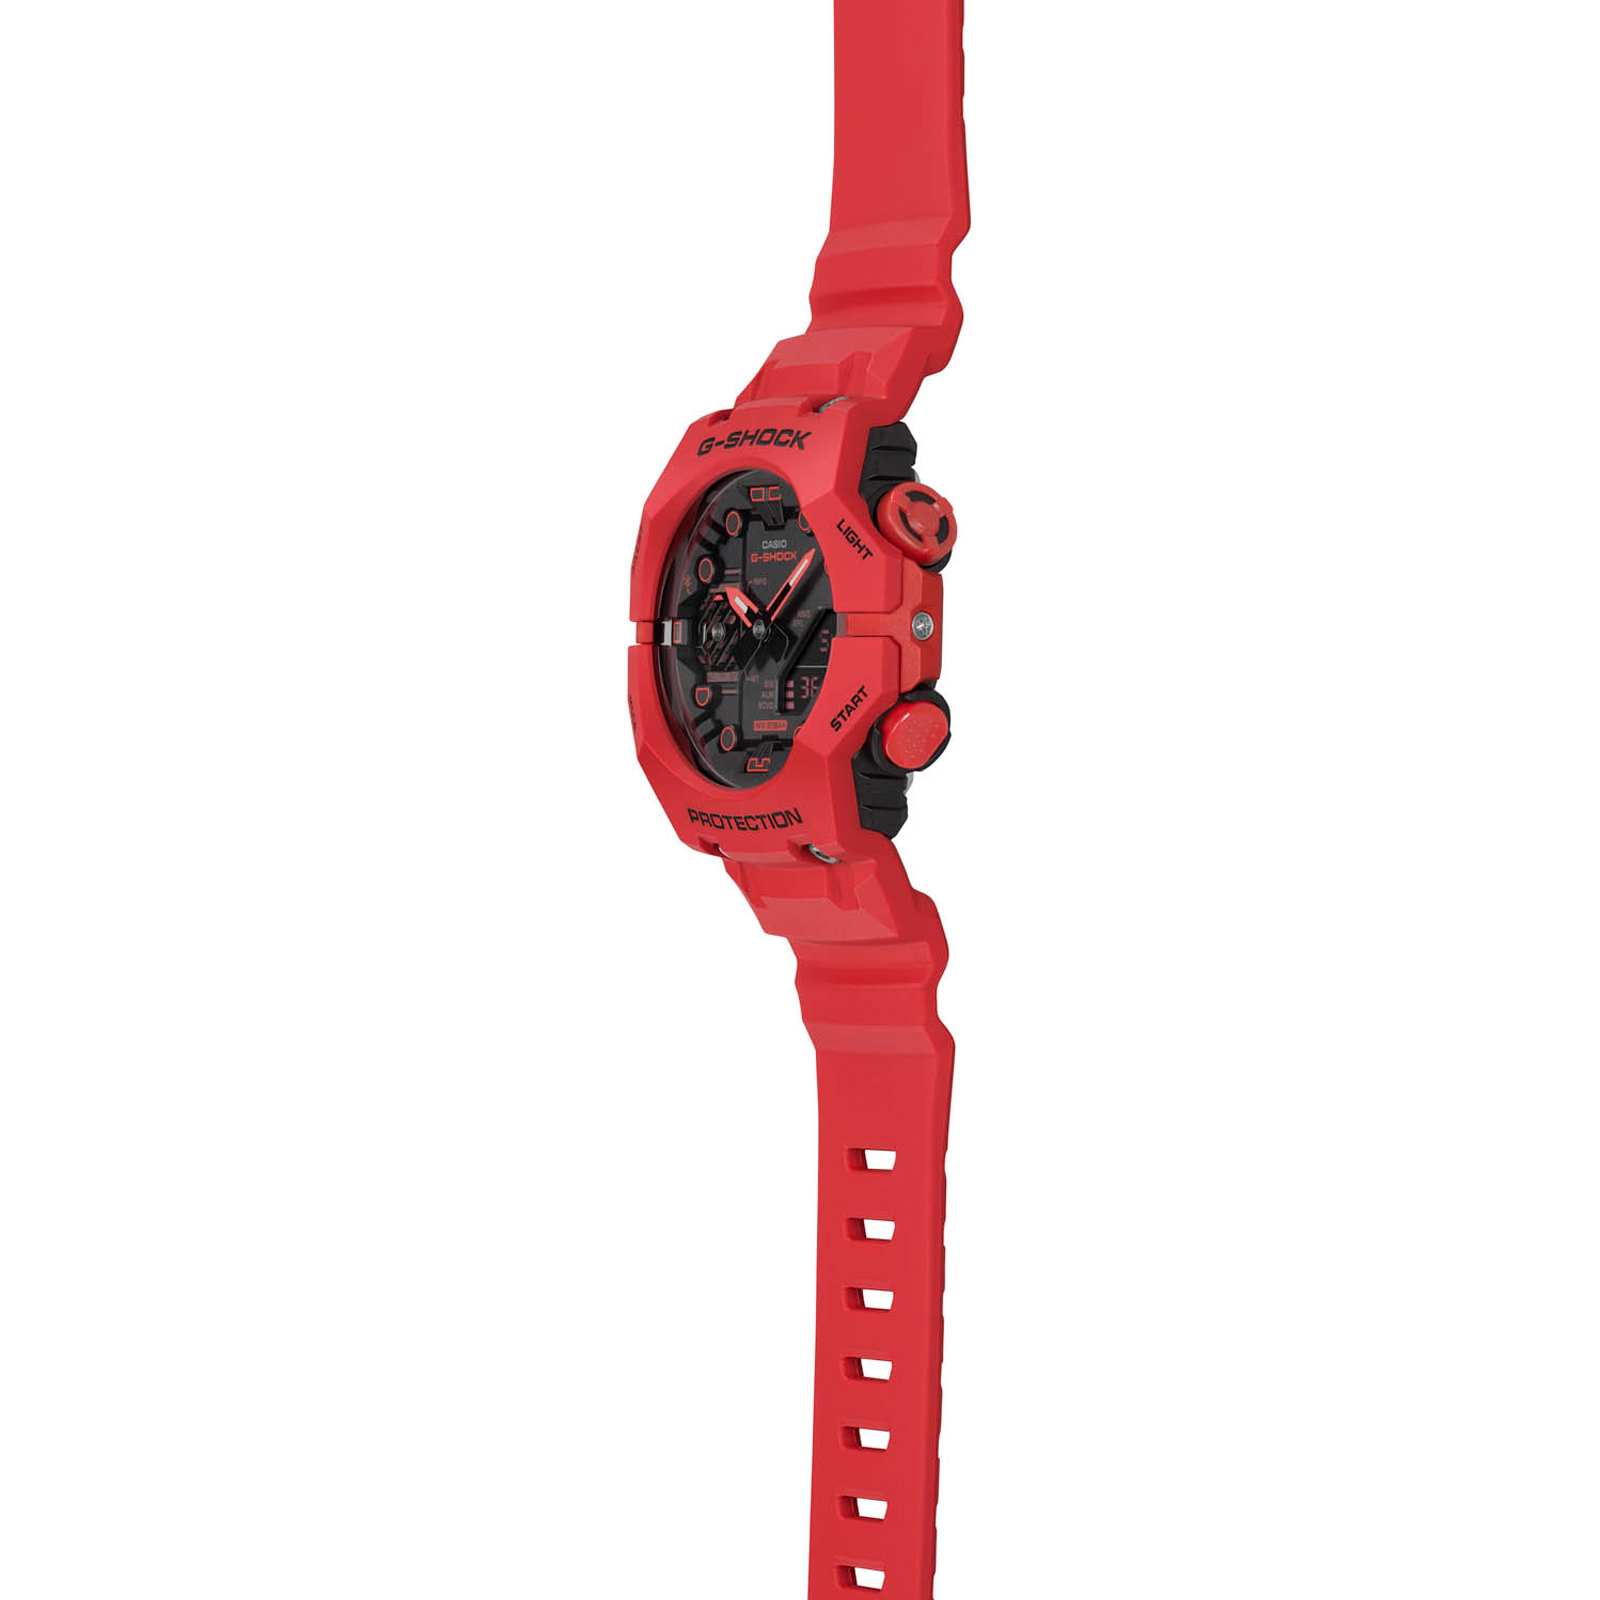 Reloj G-SHOCK GA-B001-4ADR Carbono/Resina Hombre Rojo